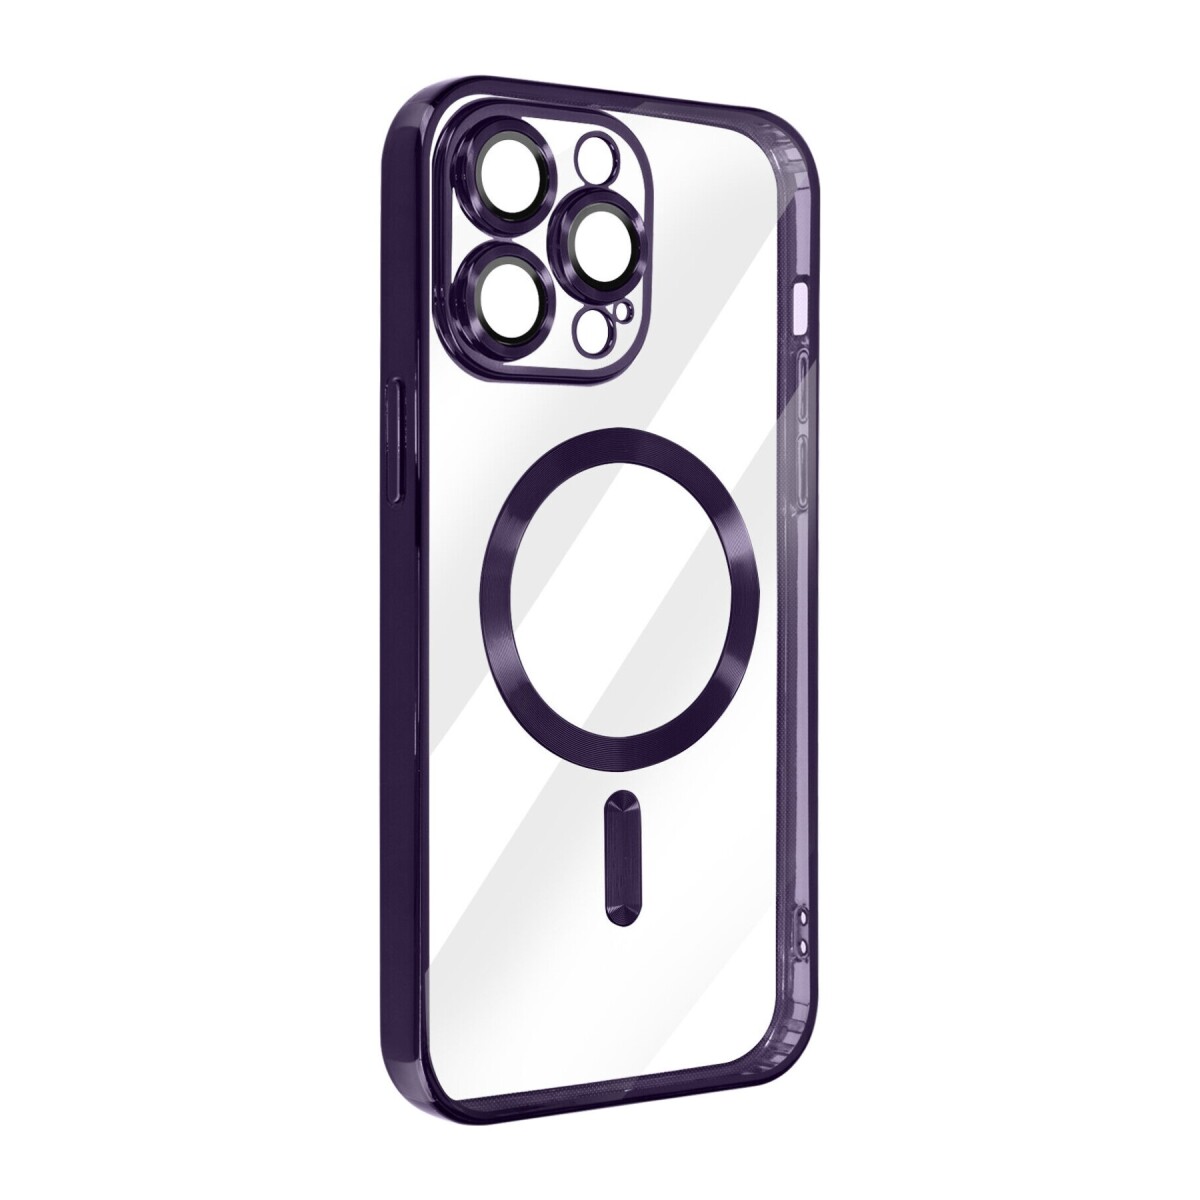 Case Transparente con Carga Inalambrica y Borde de Cromado Iphone 11 Purple